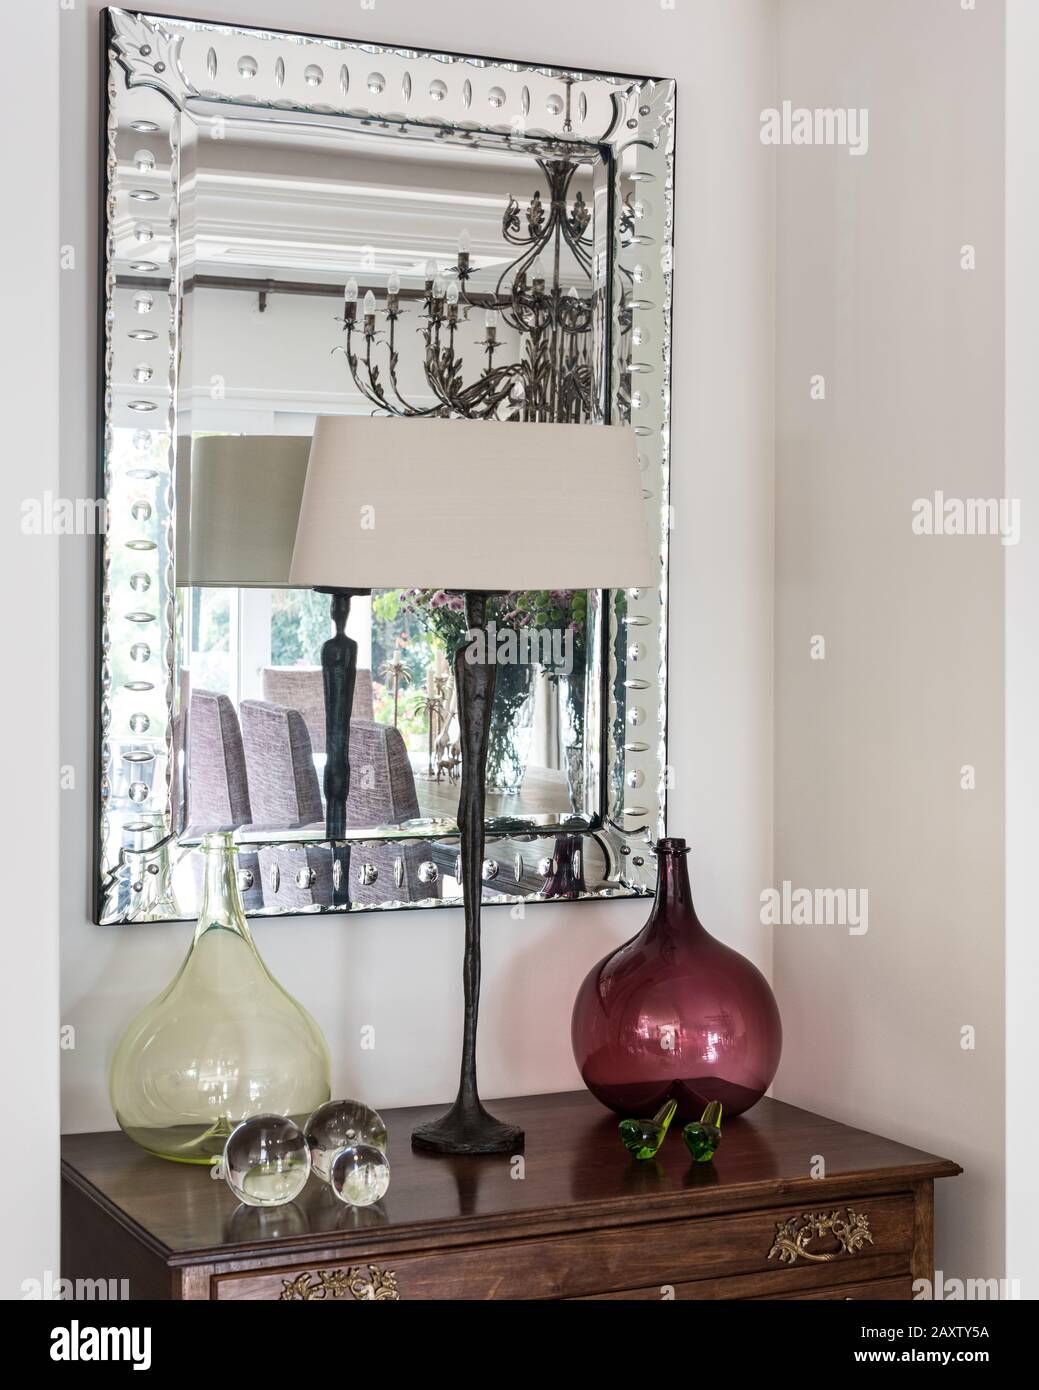 Lampe et glasswork sur la table par miroir Banque D'Images